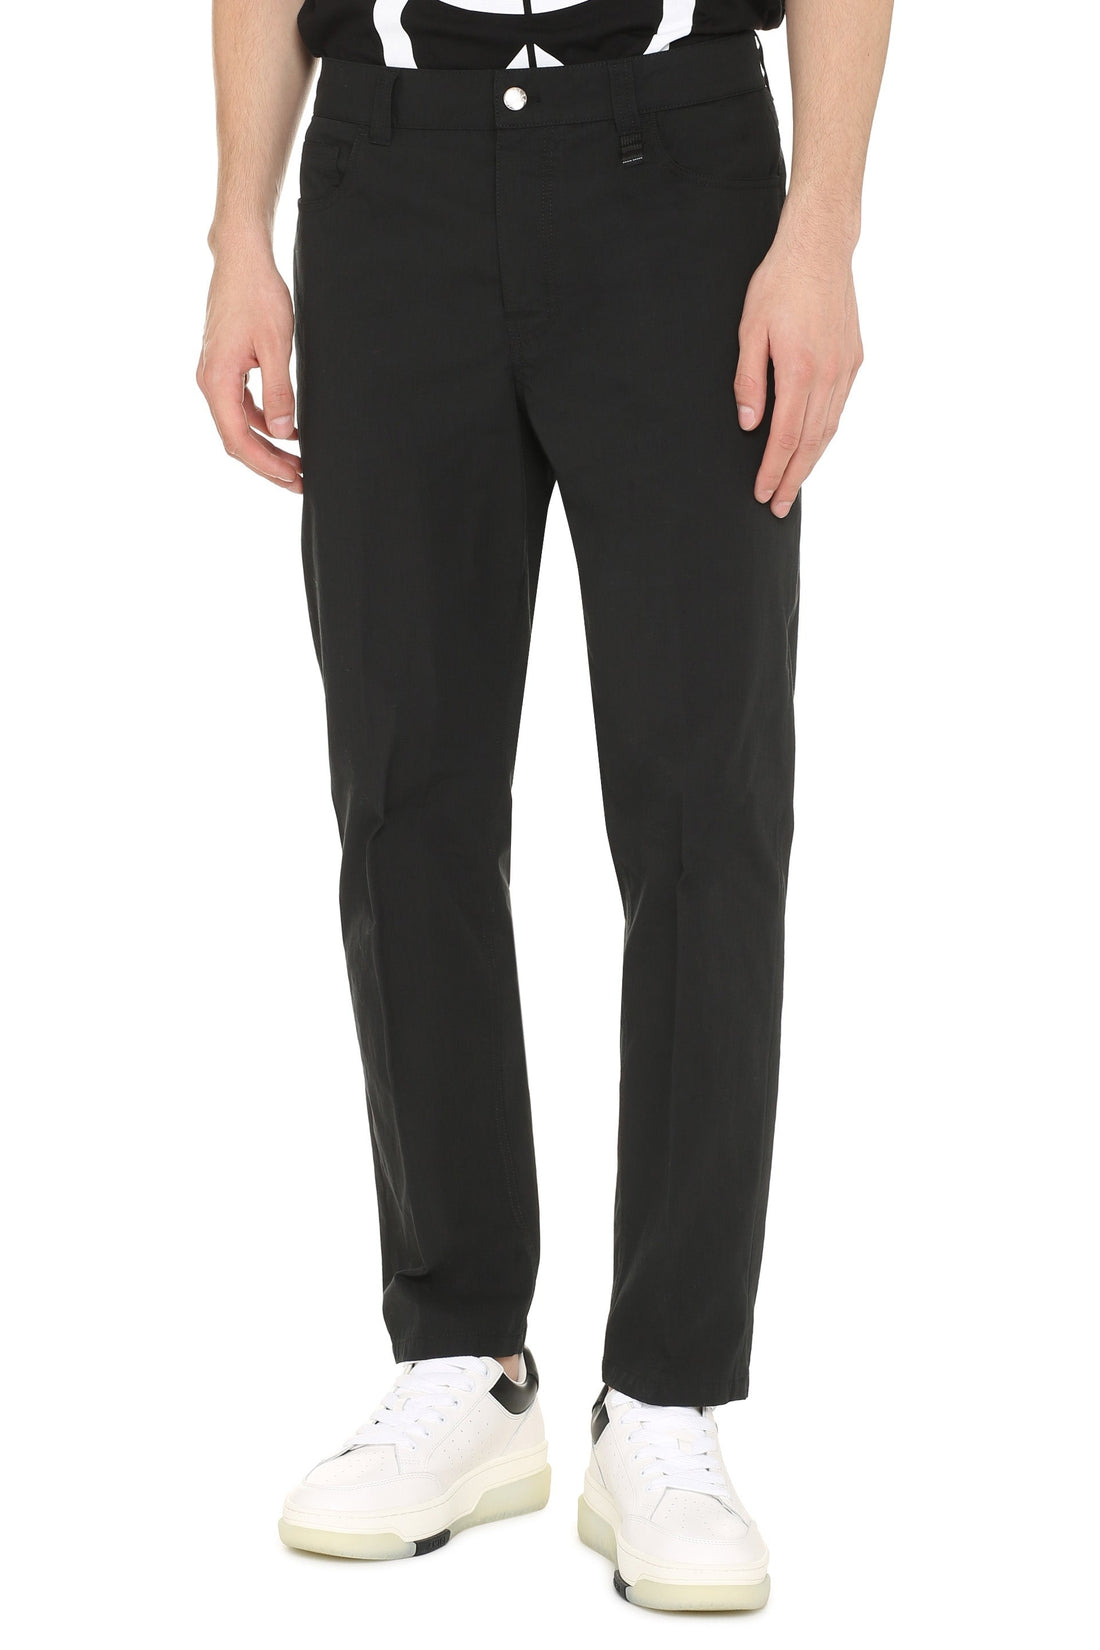 Moncler Genius-OUTLET-SALE-5 Moncler Craig Green - Cotton-blend straight-leg trousers-ARCHIVIST